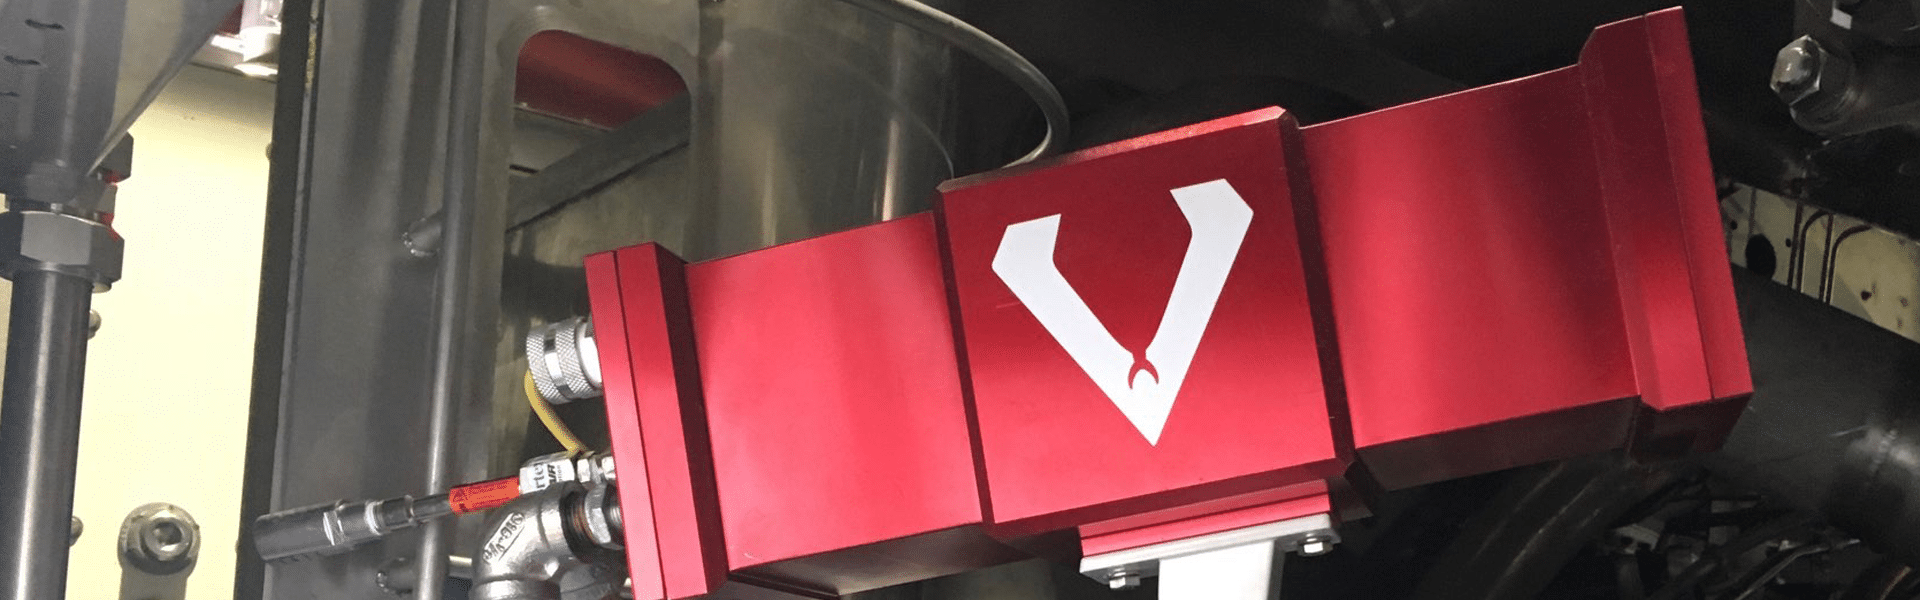 ViperVenom camera enclosures - customer installation